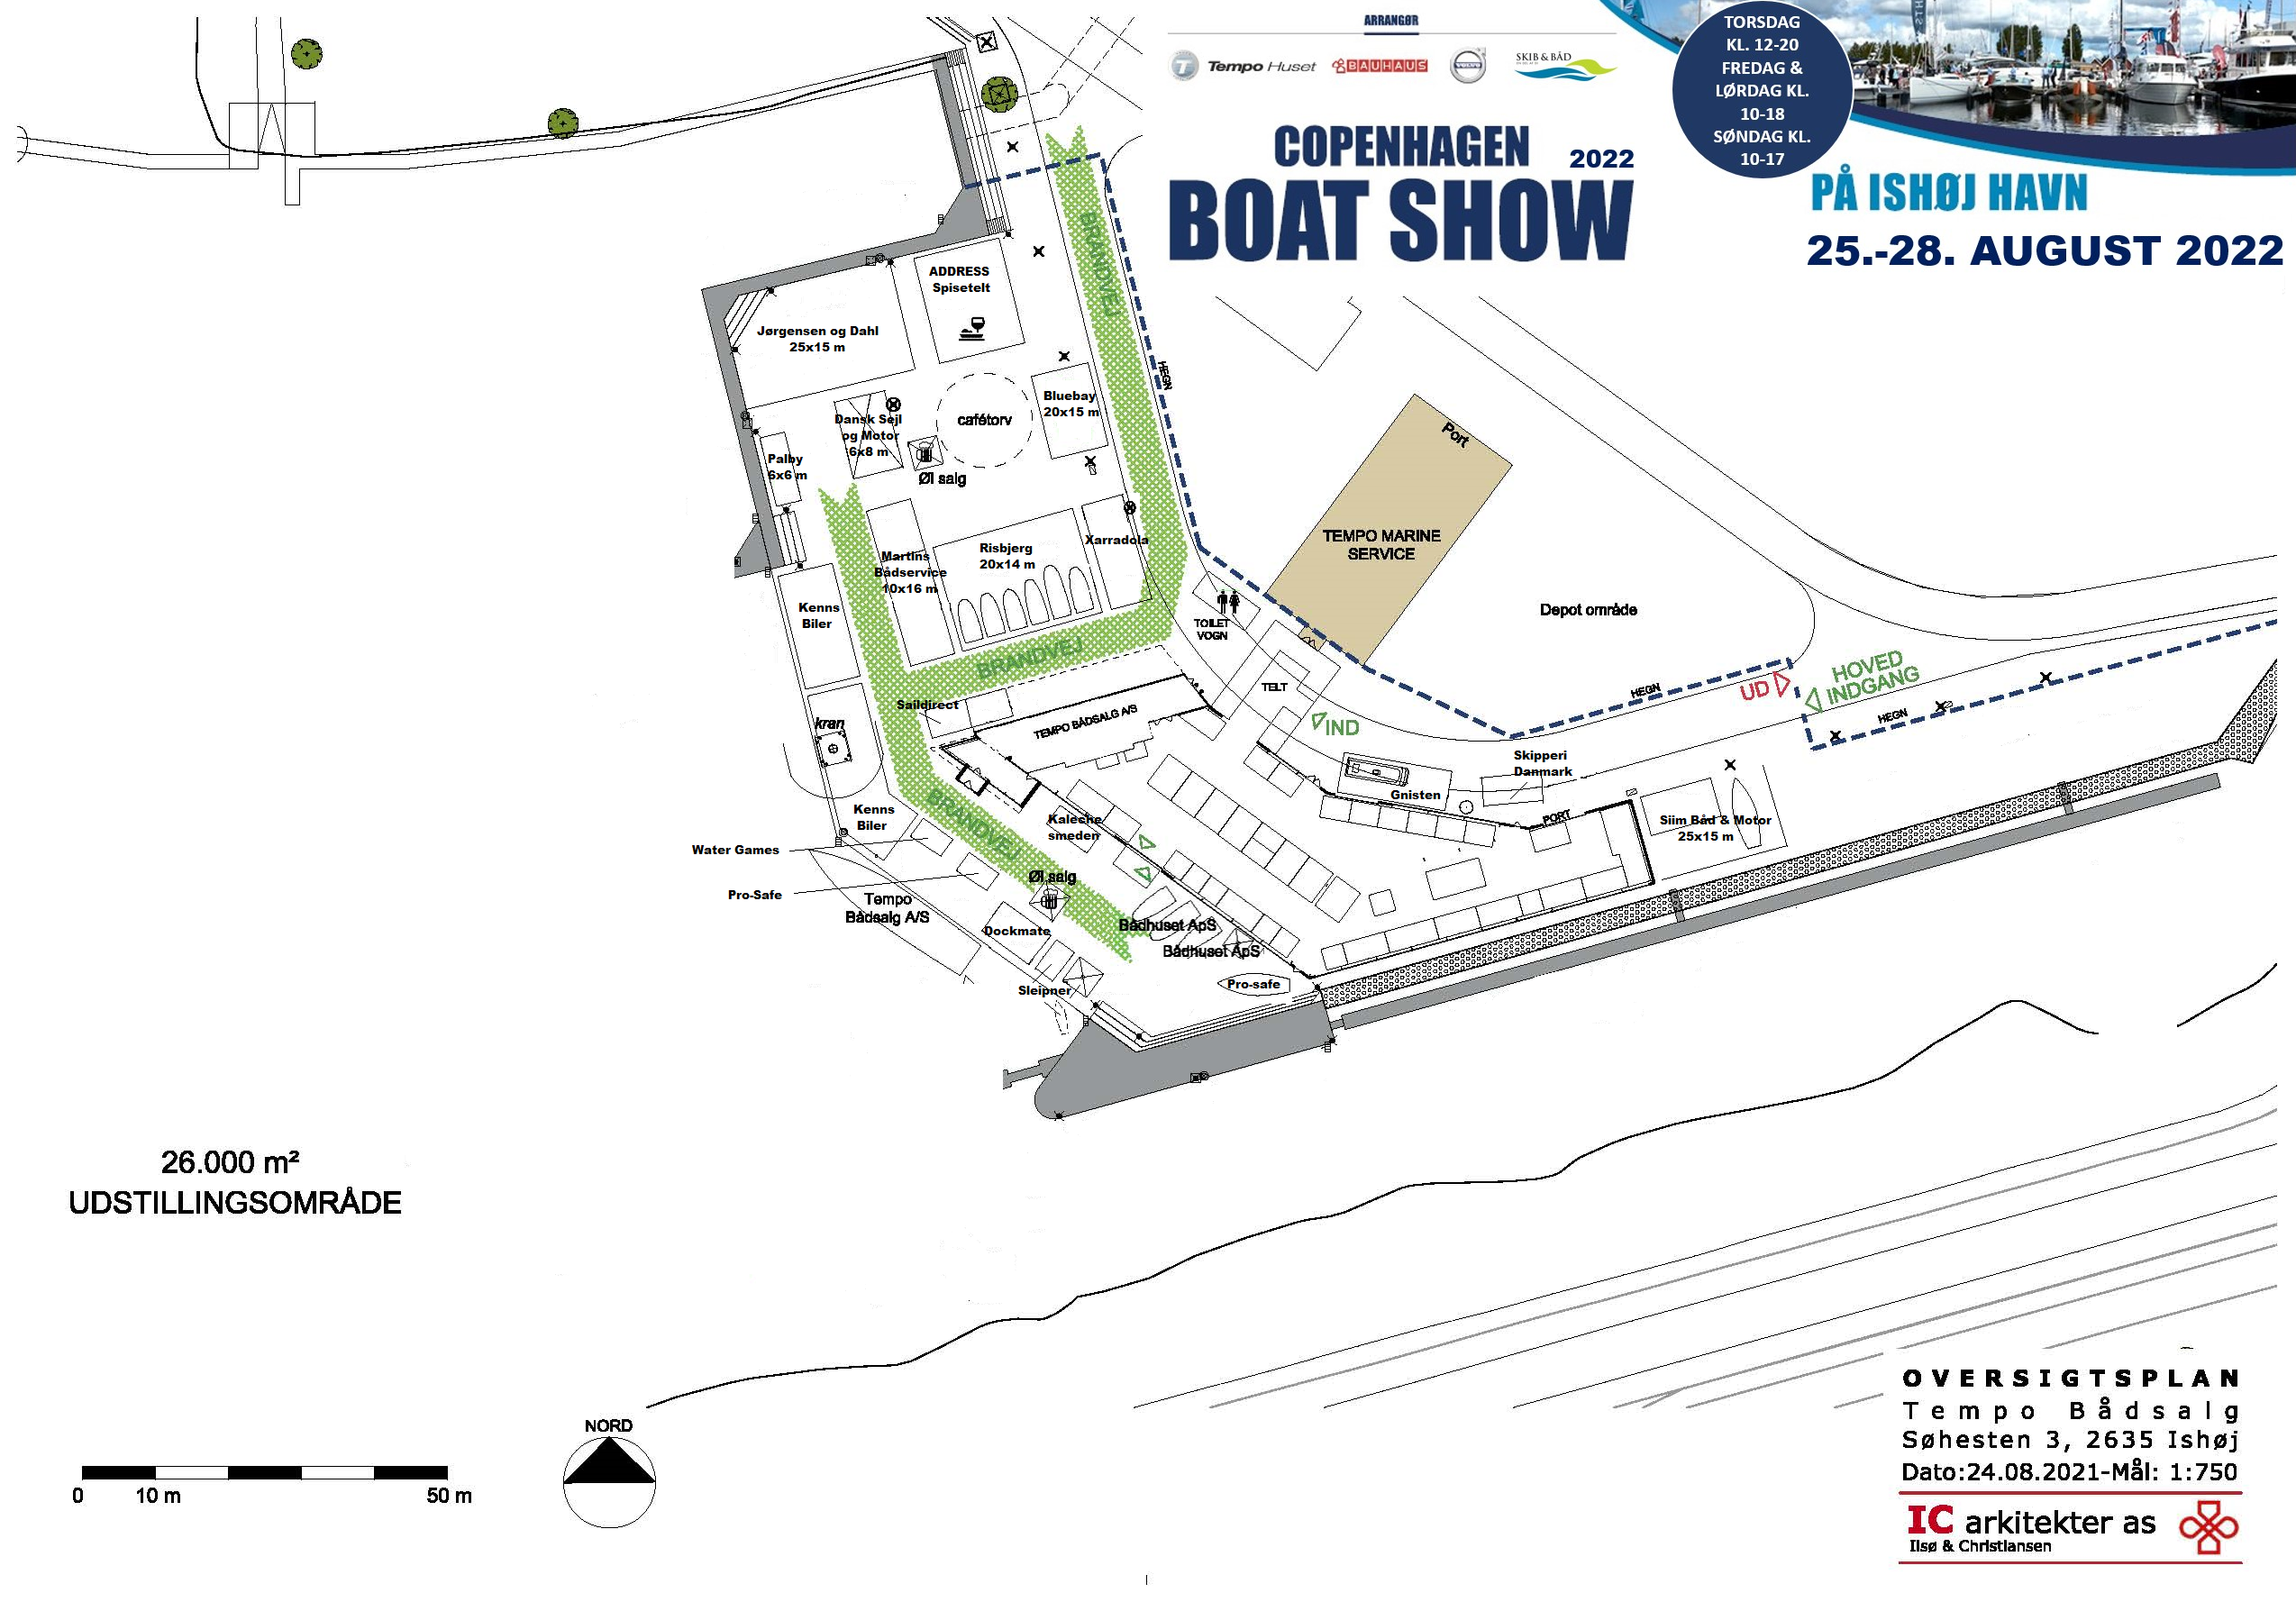 Copenhagen Boat Show 2022 - udstiller i Hallerne.